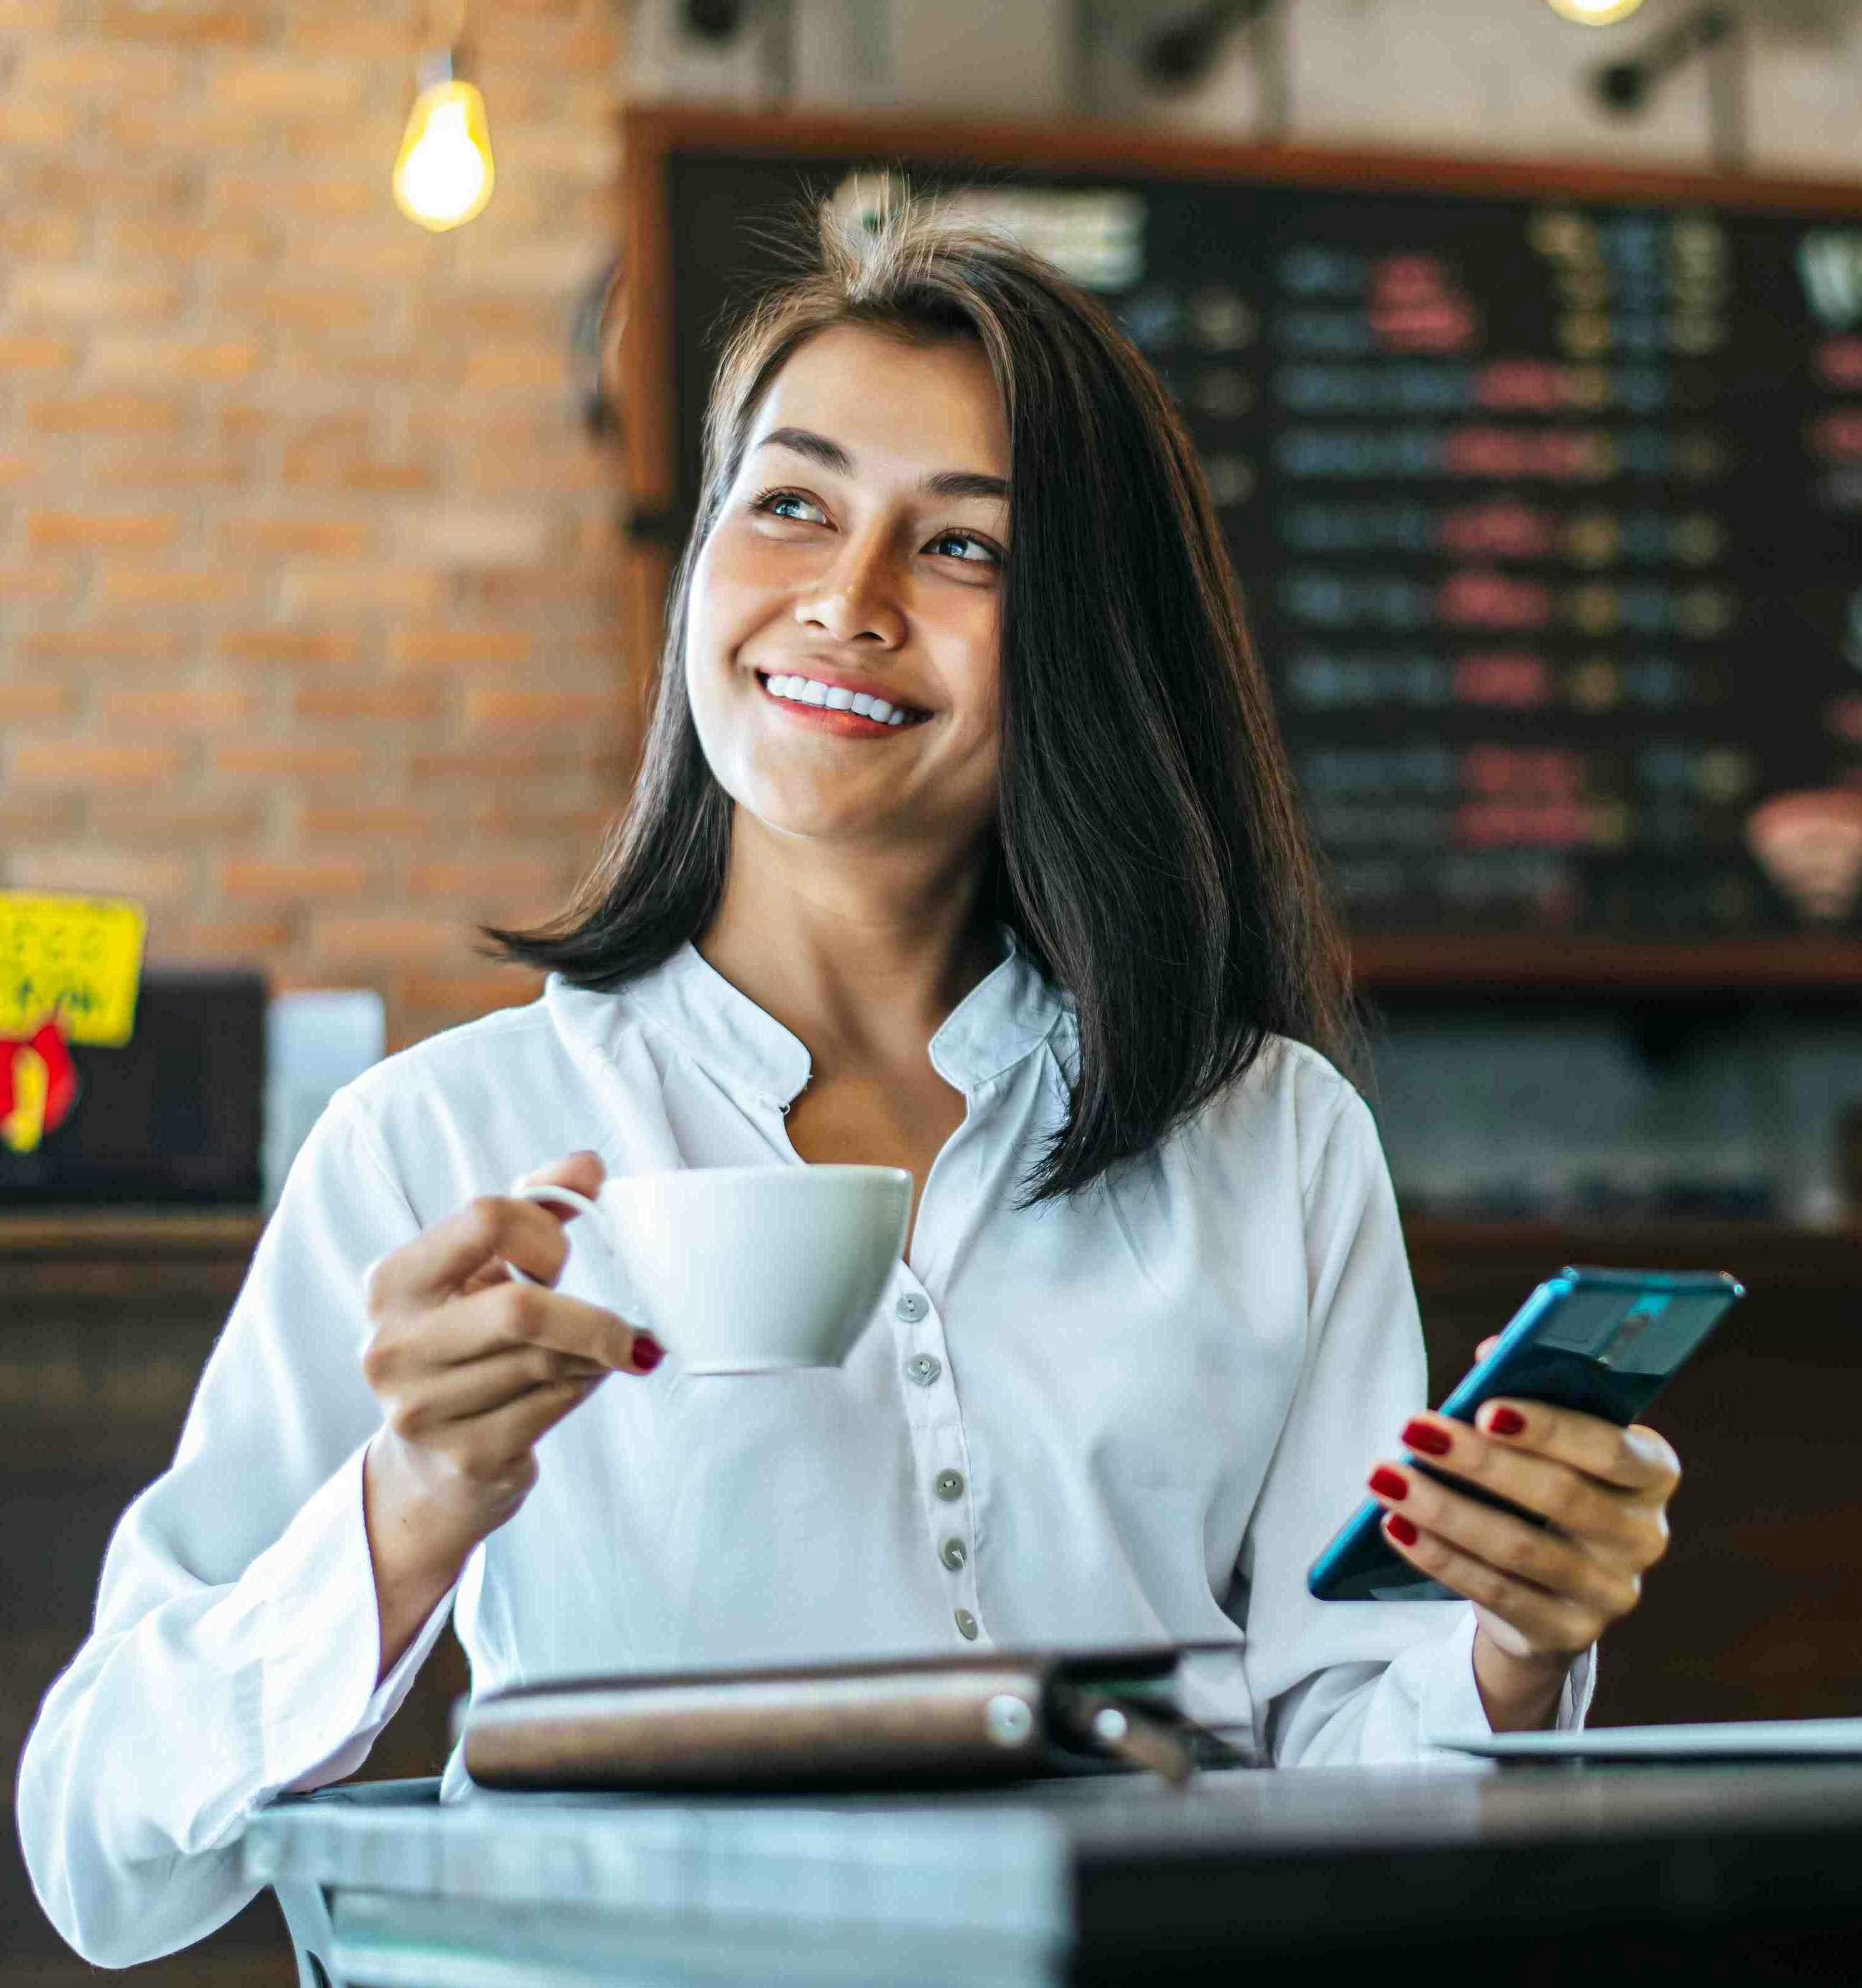 Mulher representando a dona de um estabelecimento segurando um celular enquanto toma um café